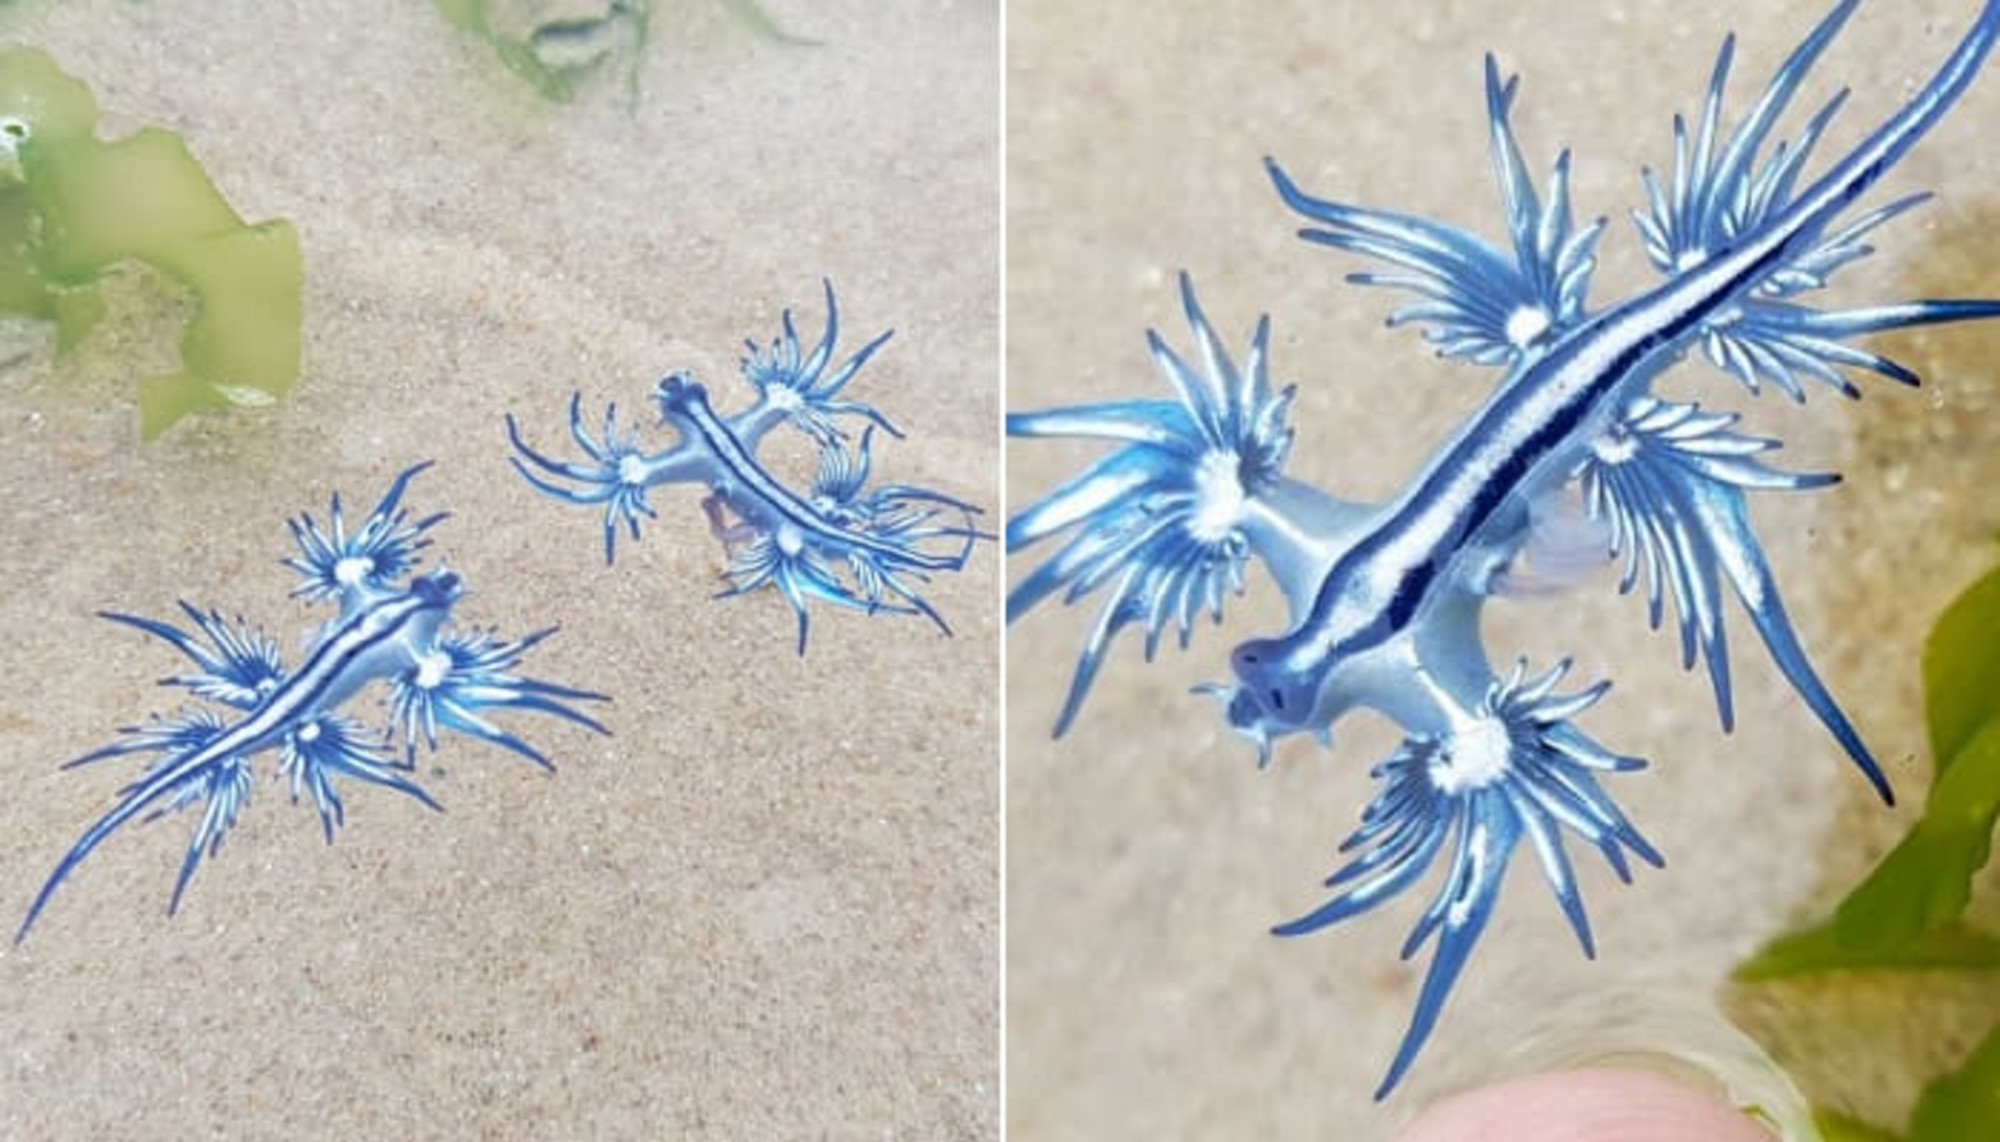 神秘的な青色のビジュアルで致命的な魅力を誇る海の中の小さな青龍 極稀な ブルードラゴン発見